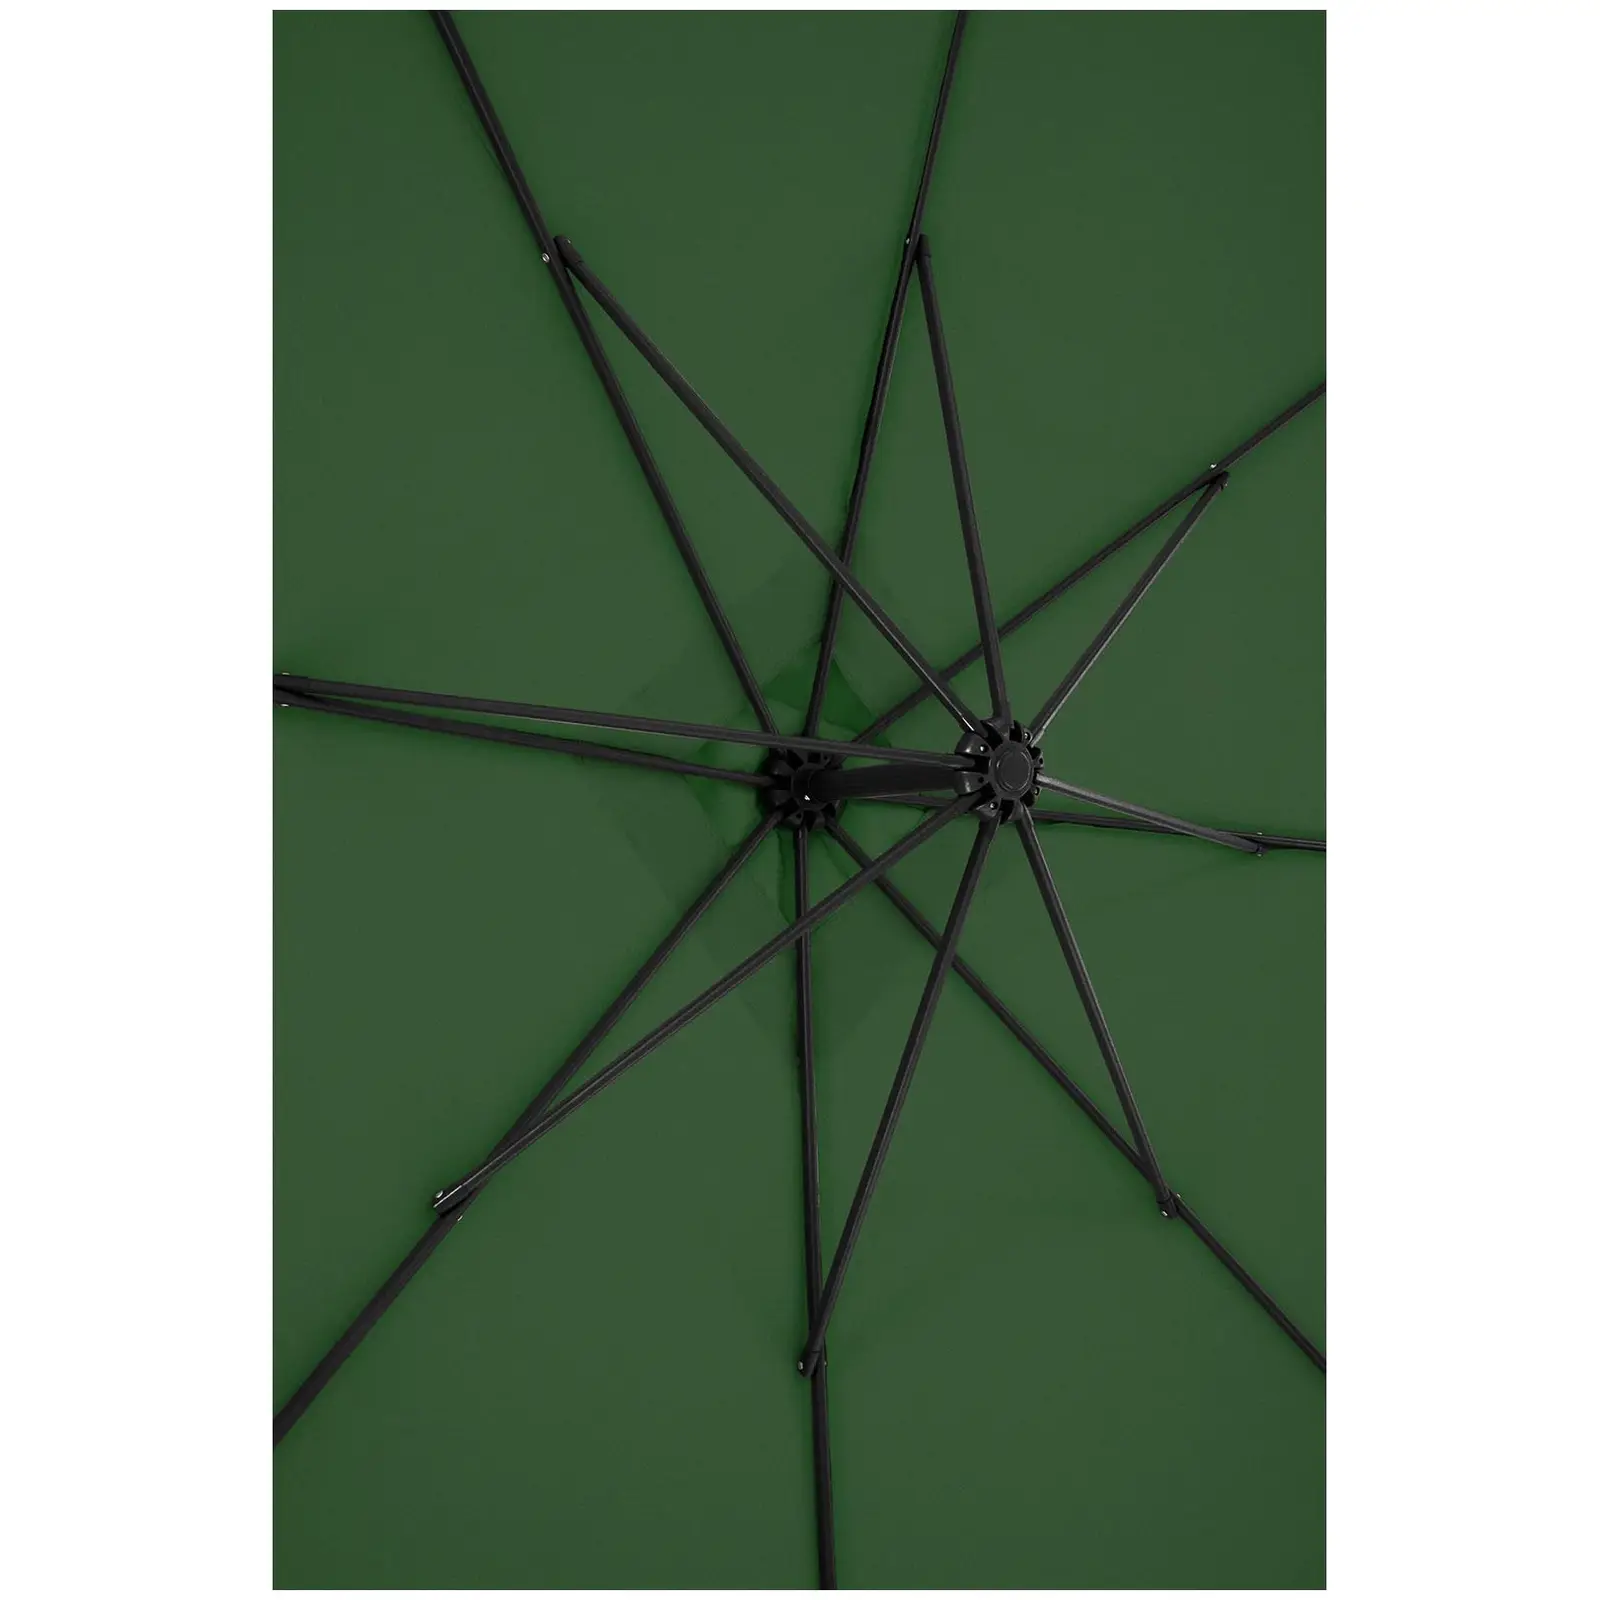 Occasion Parasol de jardin - vert - carré - 250 x 250 cm - inclinable